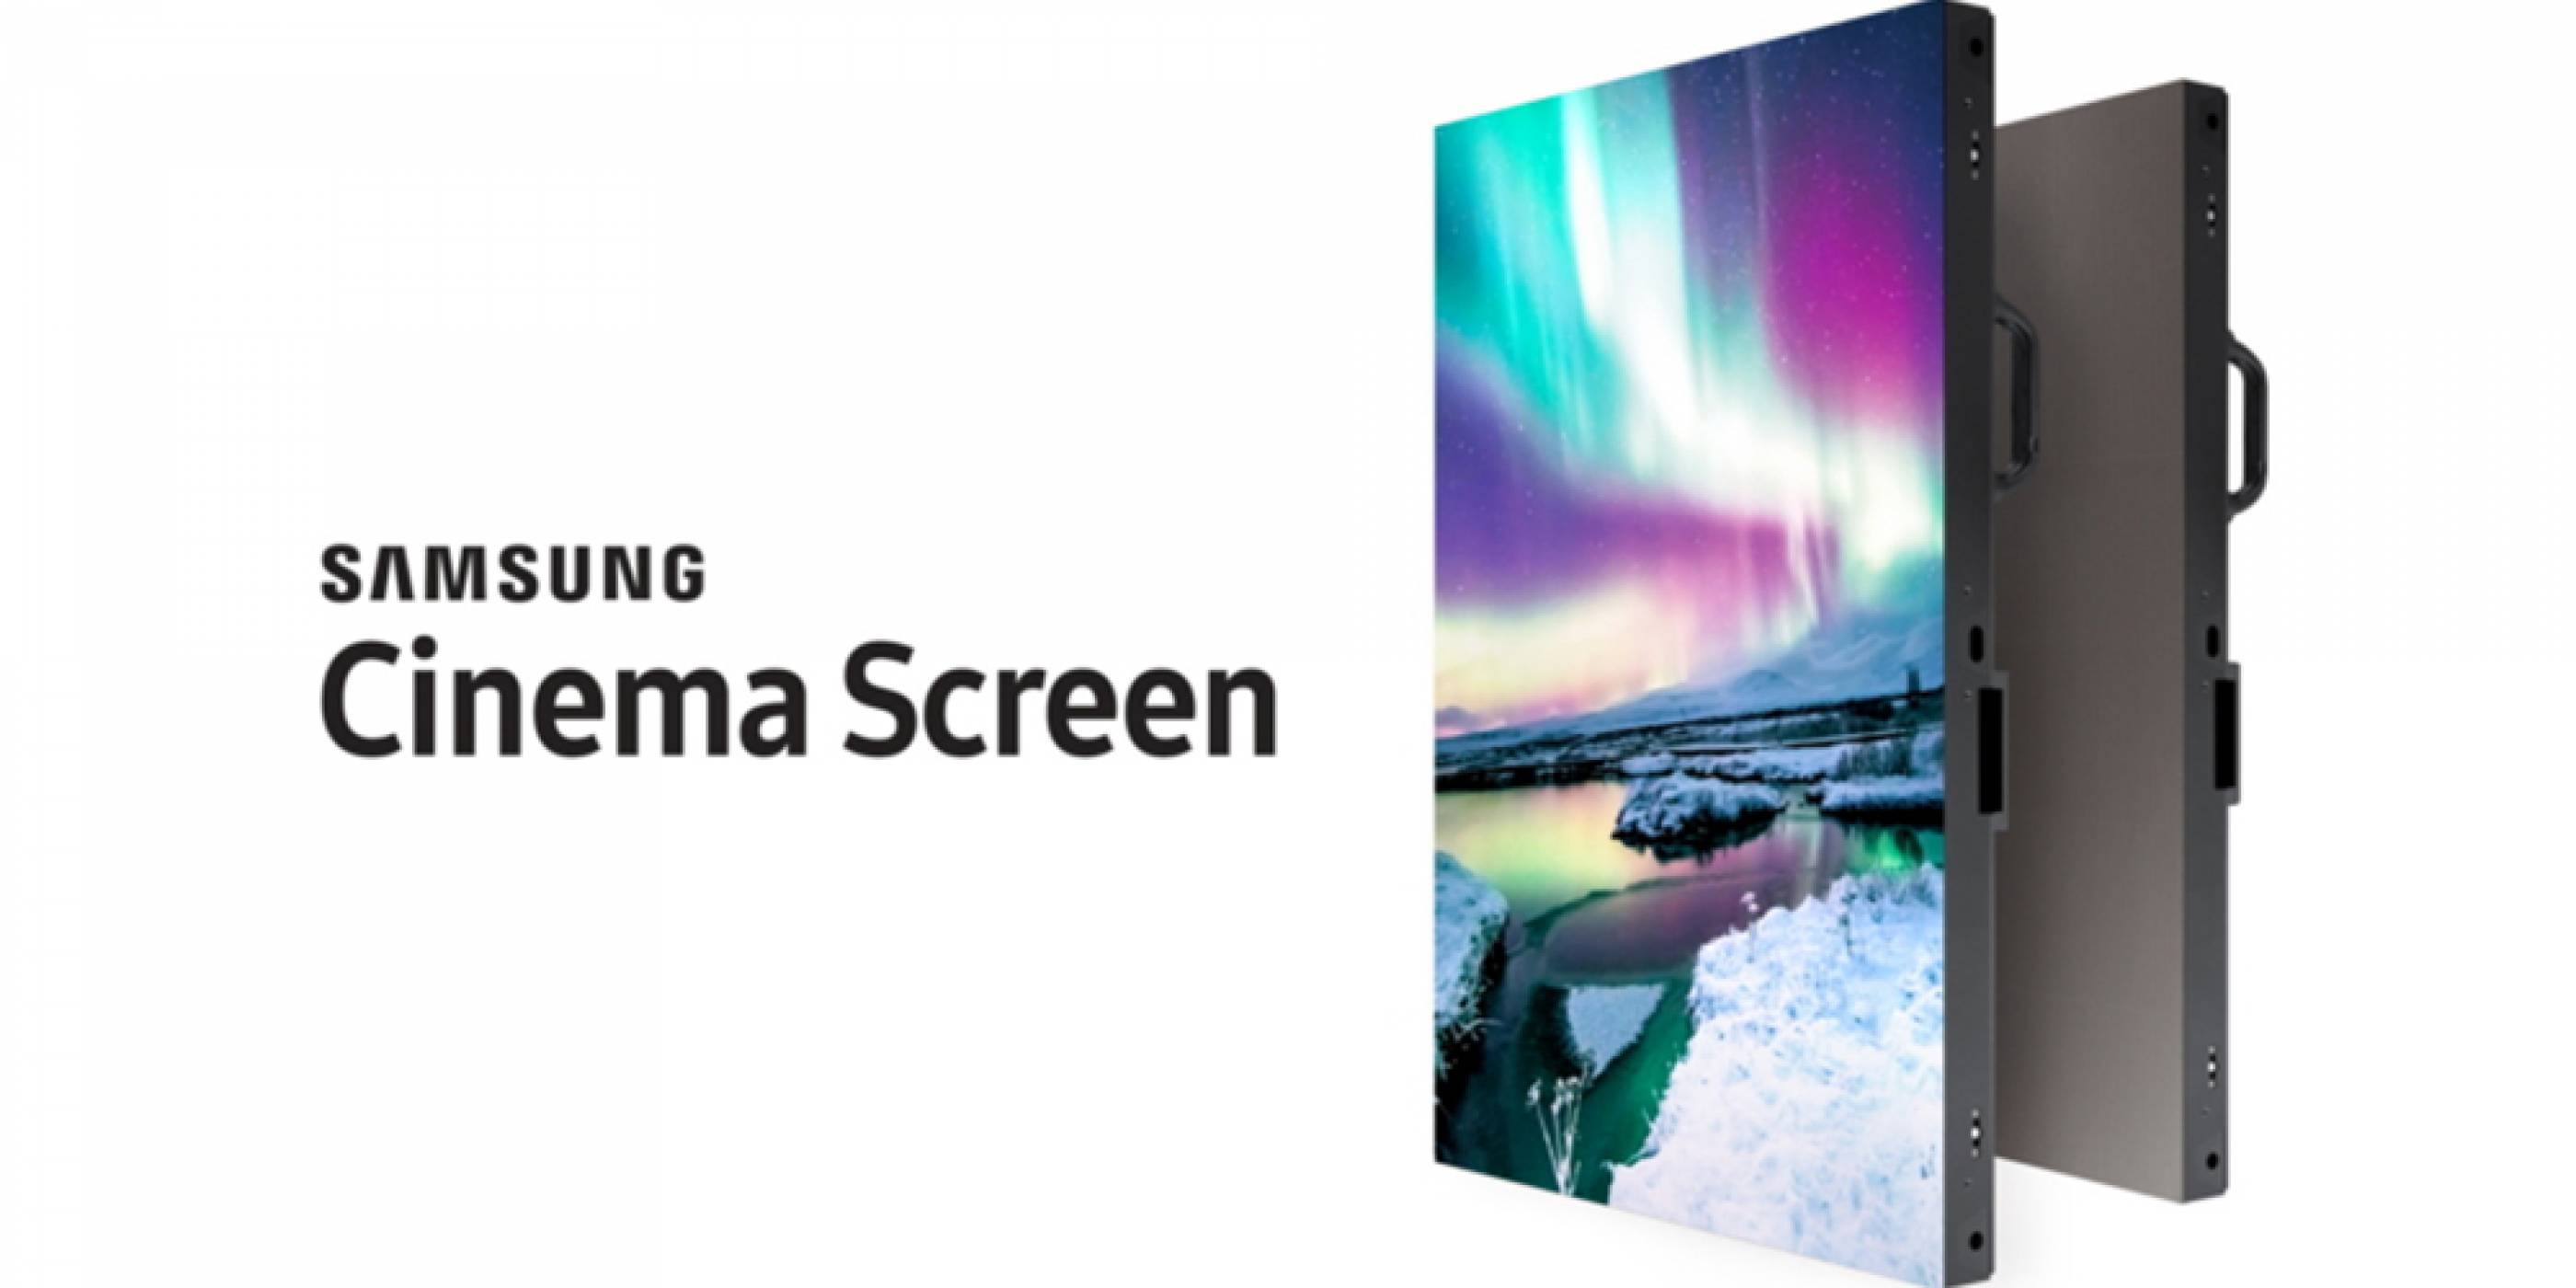  Samsung Cinema Screen е първият 10.3-метров LED HDR 4K киноекран